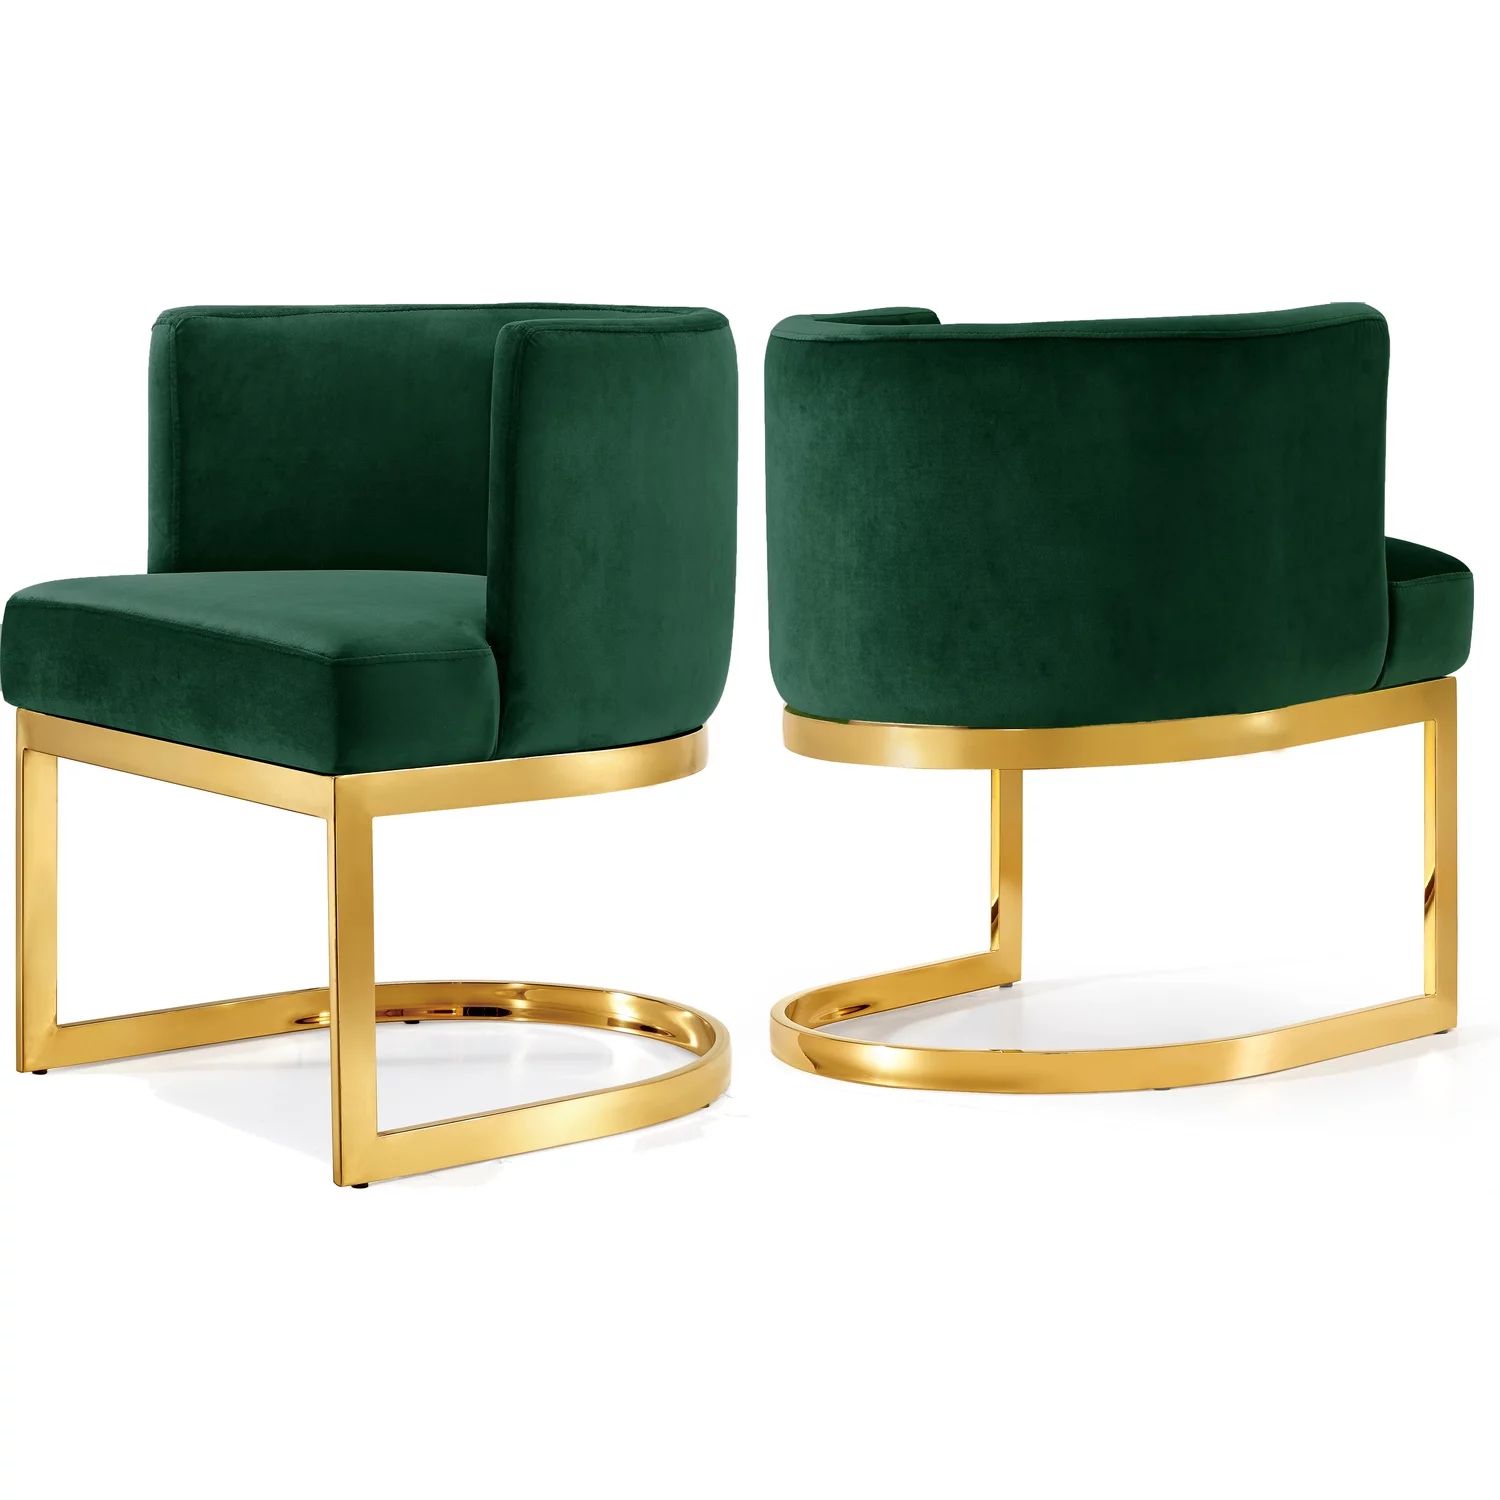 Gianna Green Velvet Dining Chair-Color:Green Velvet,Finish:Gold,Style:Contemporary | Walmart (US)